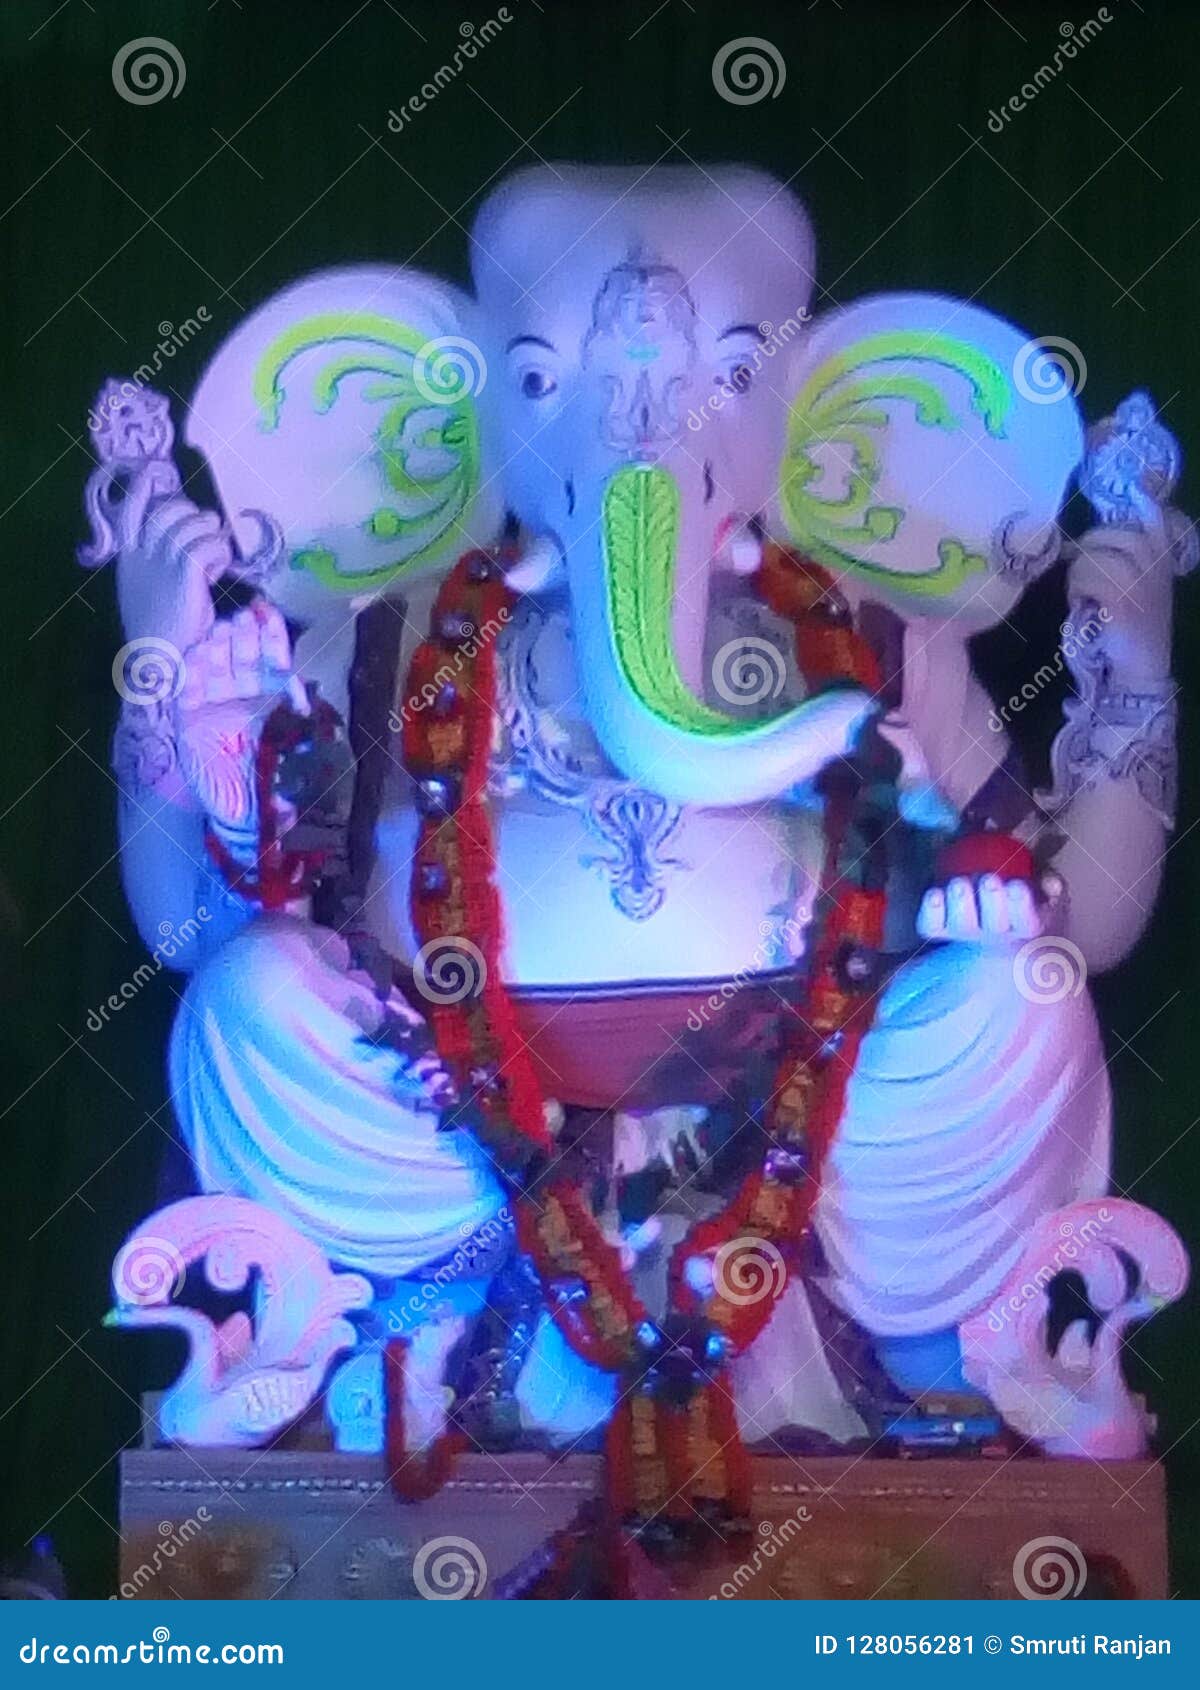 Shri Ganesha stock image. Image of lord, shiva, ganesha - 128056281